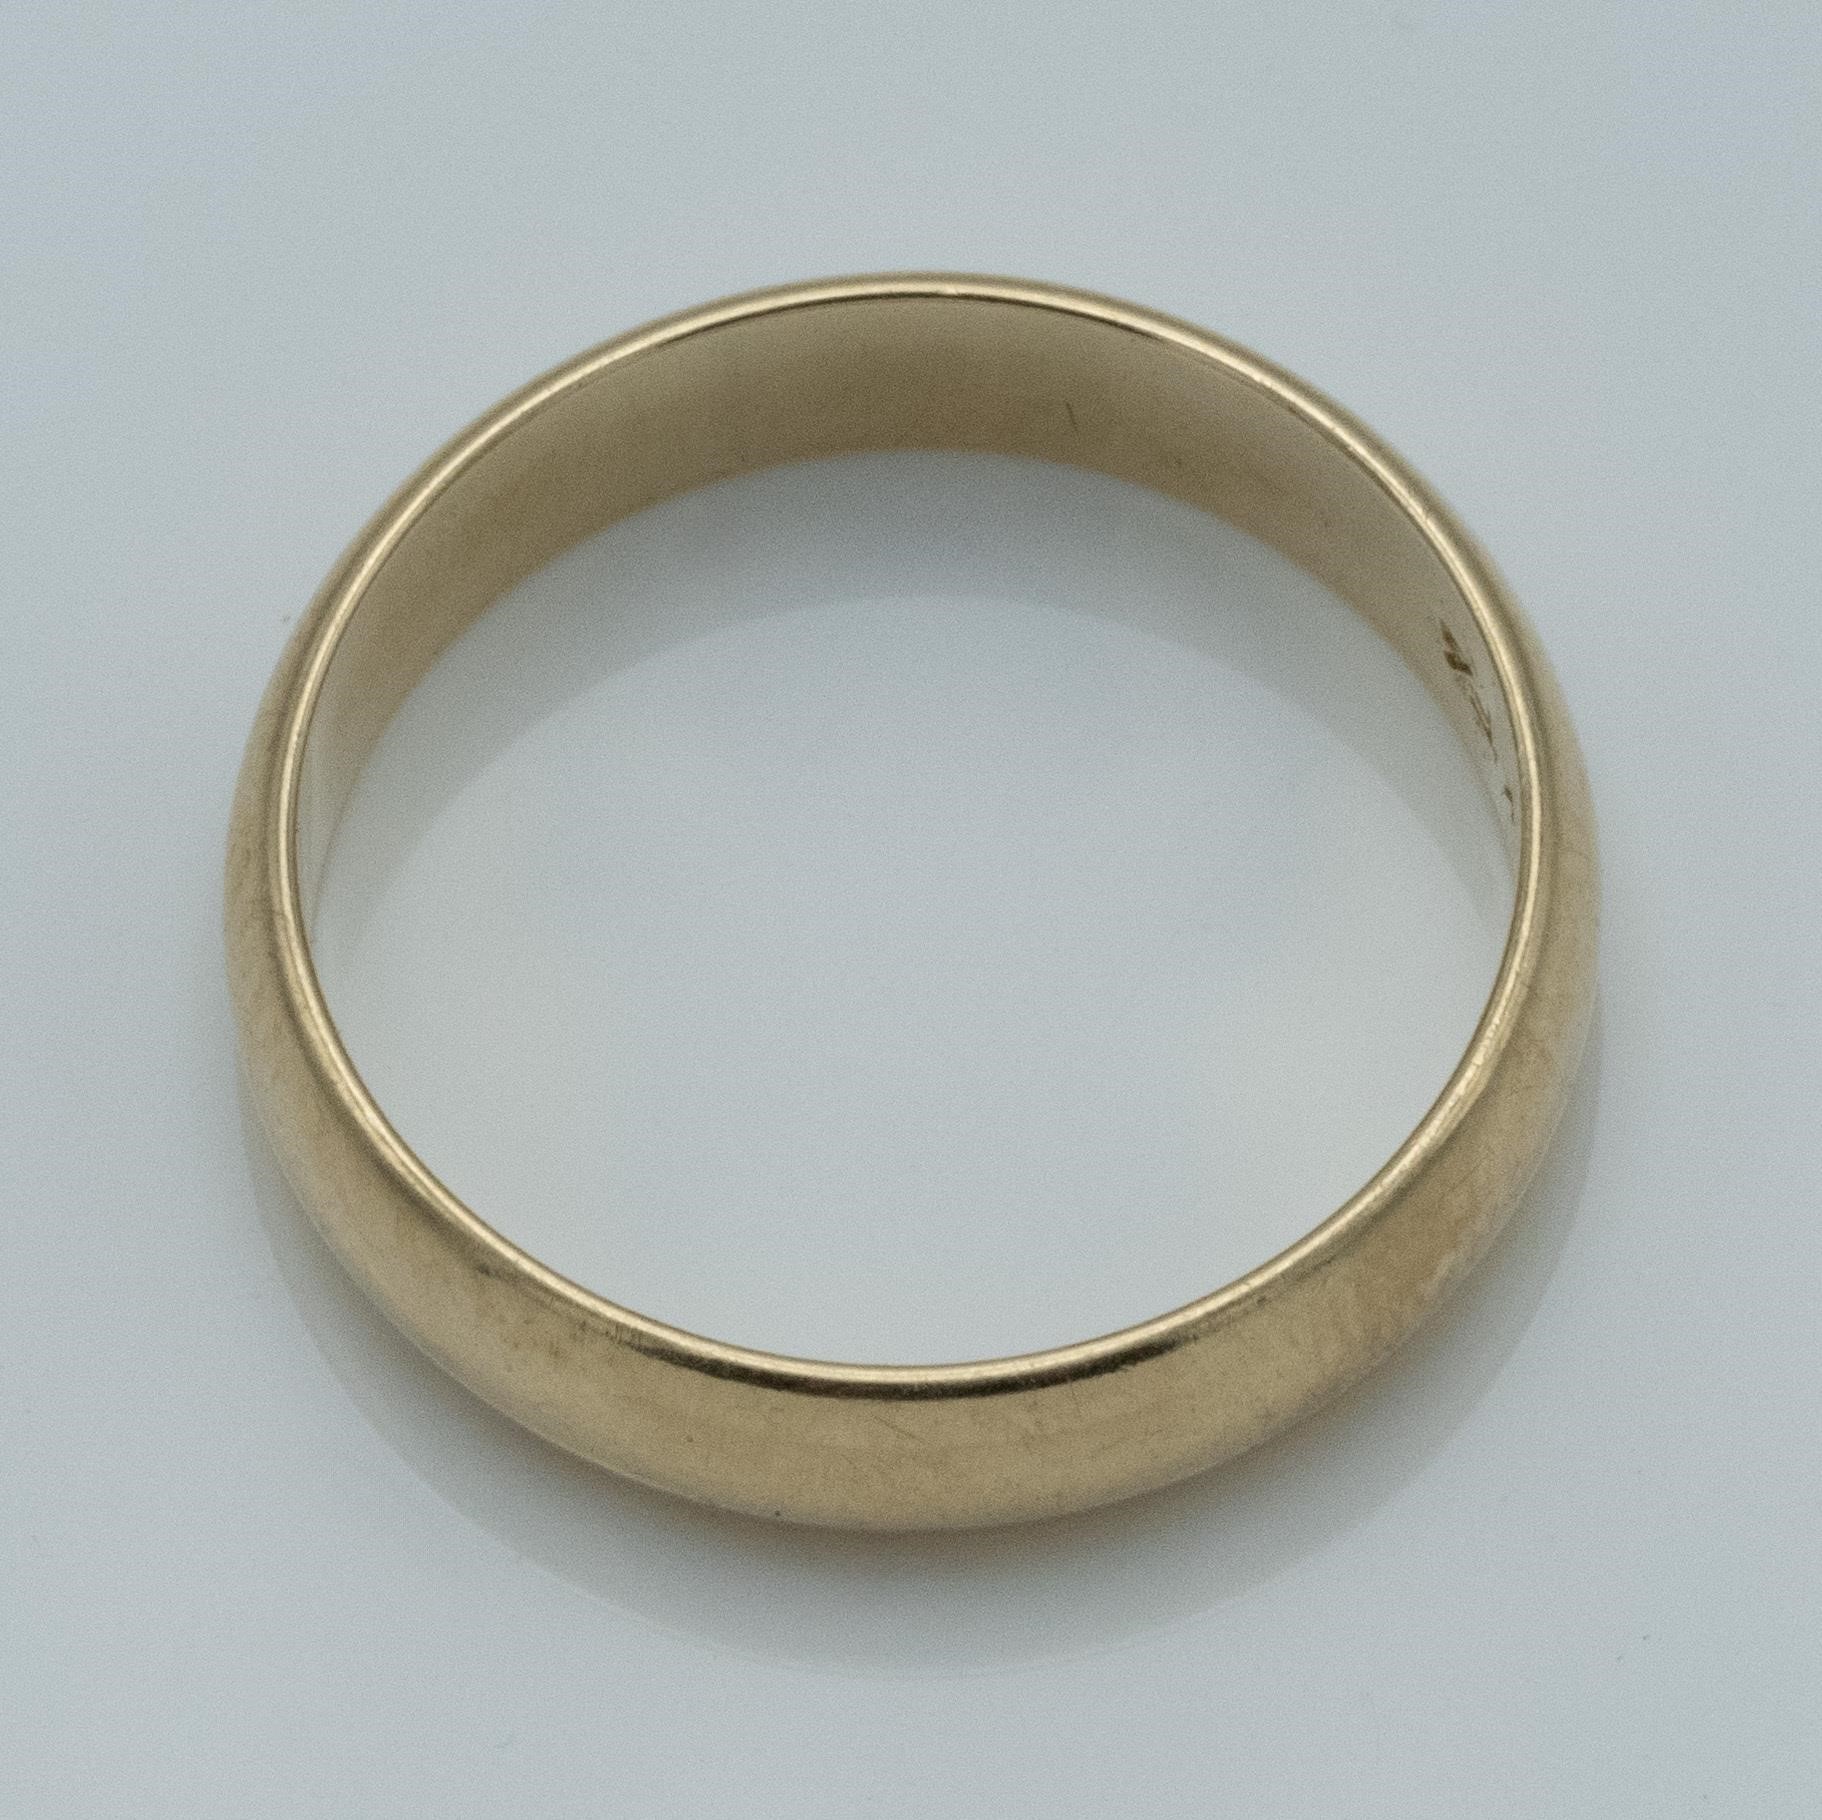 14k Yellow Gold Wedding Band Ring